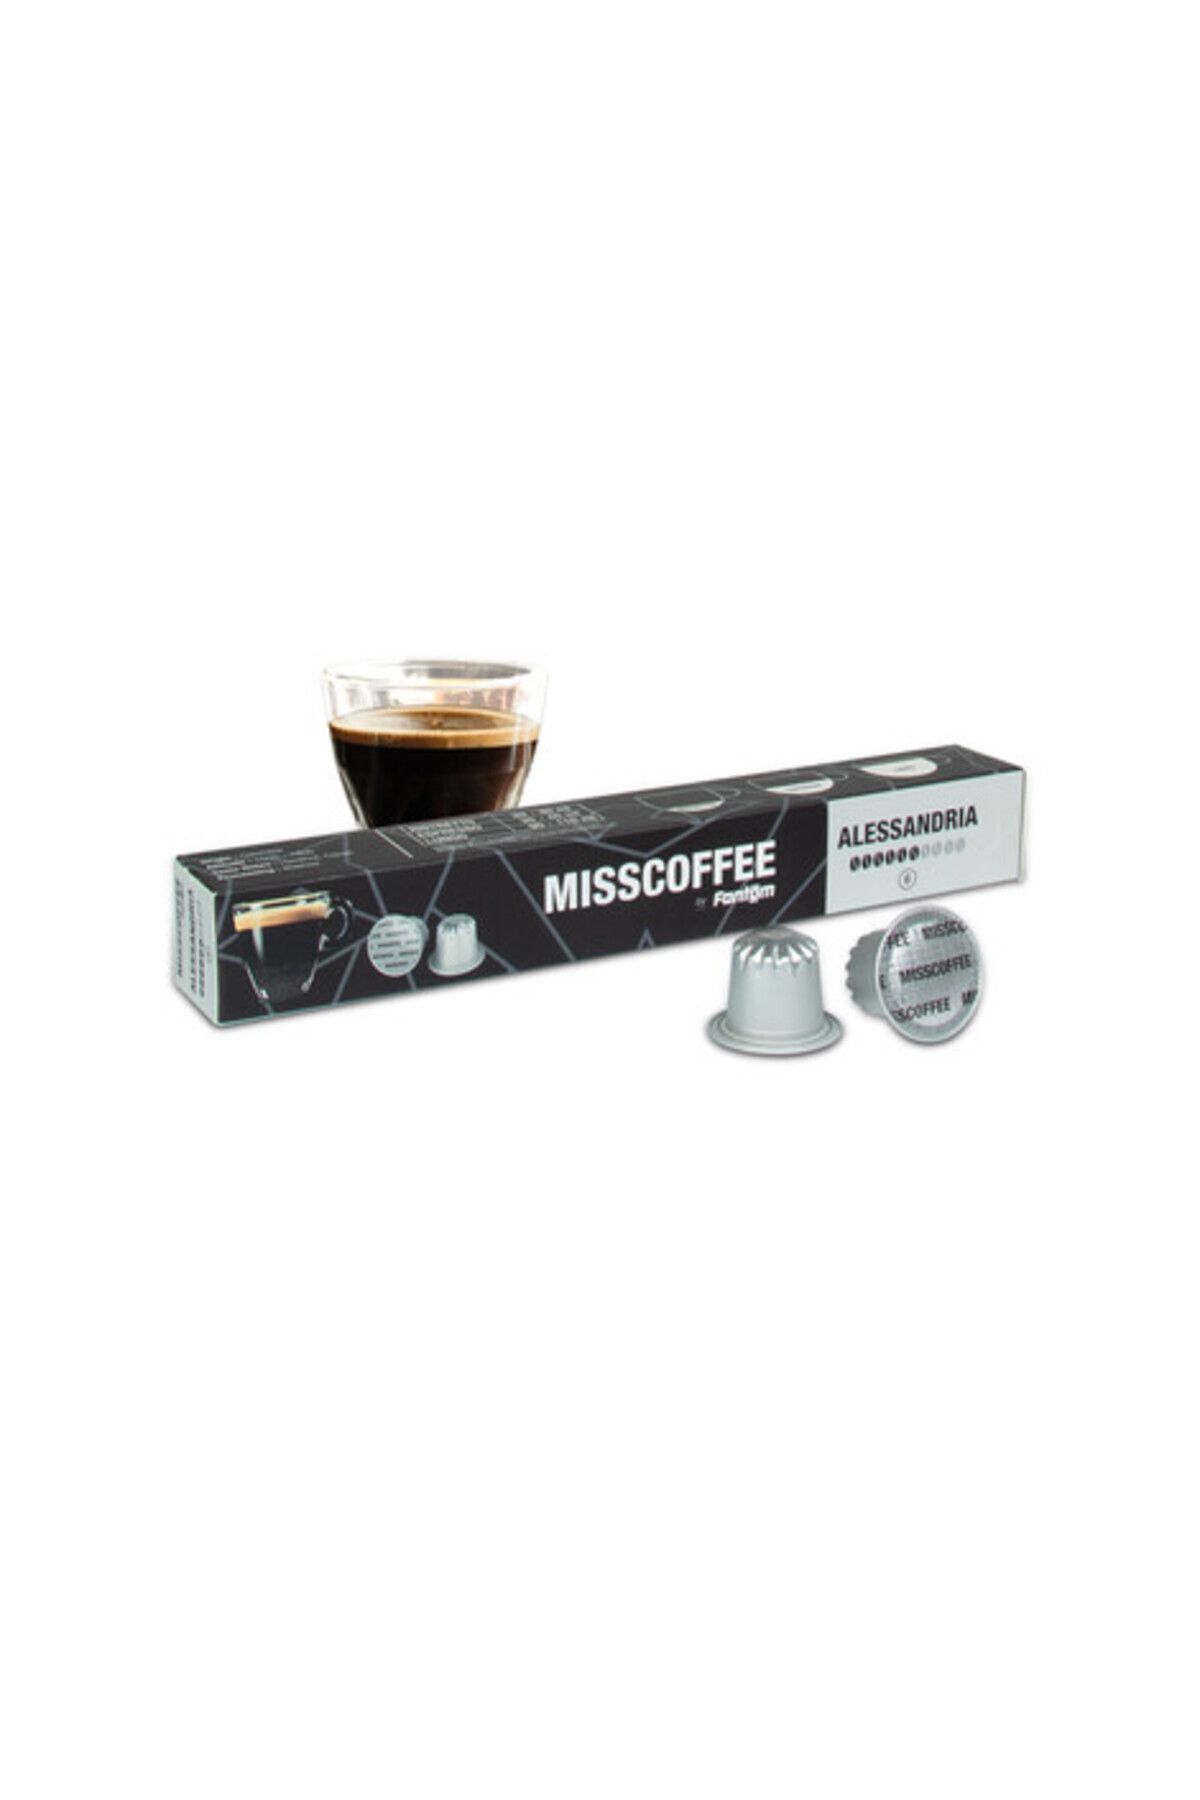 FANTOM Mısscoffee Alessandrıa Kapsül Kahve Kutusu Nespresso Sistem Uyumlu